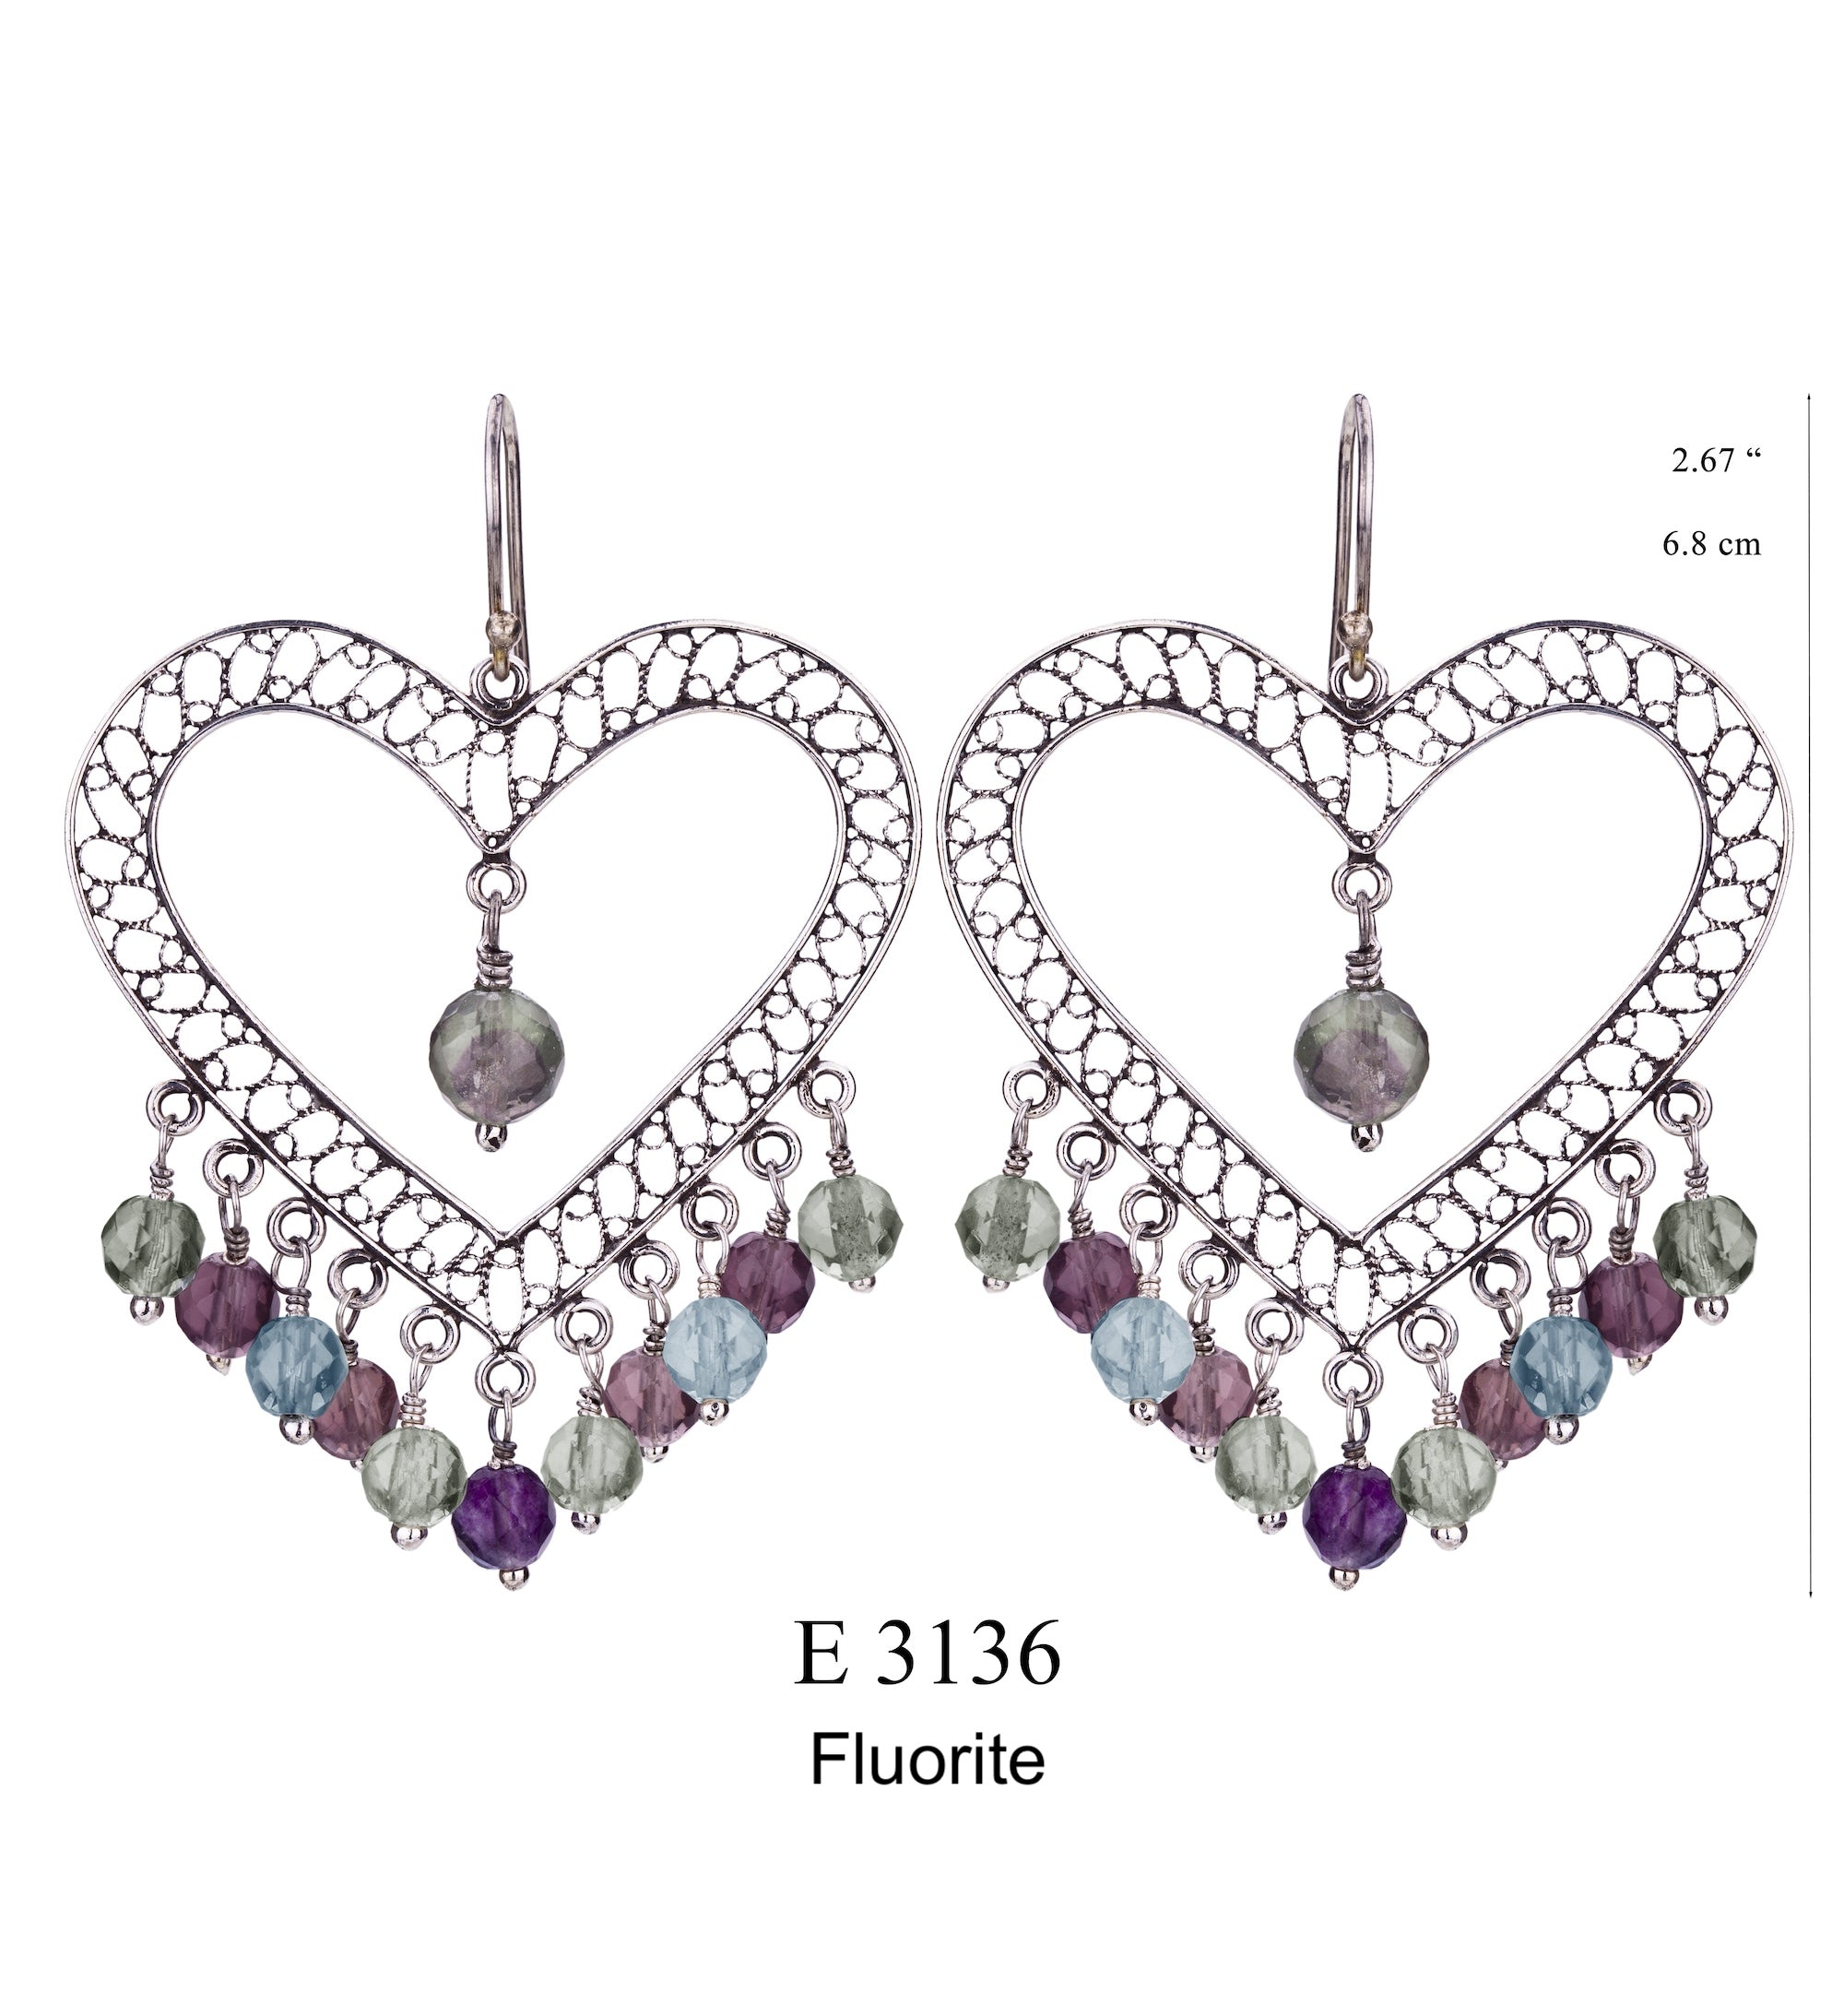 Heart Earrings with Fluorite Stones